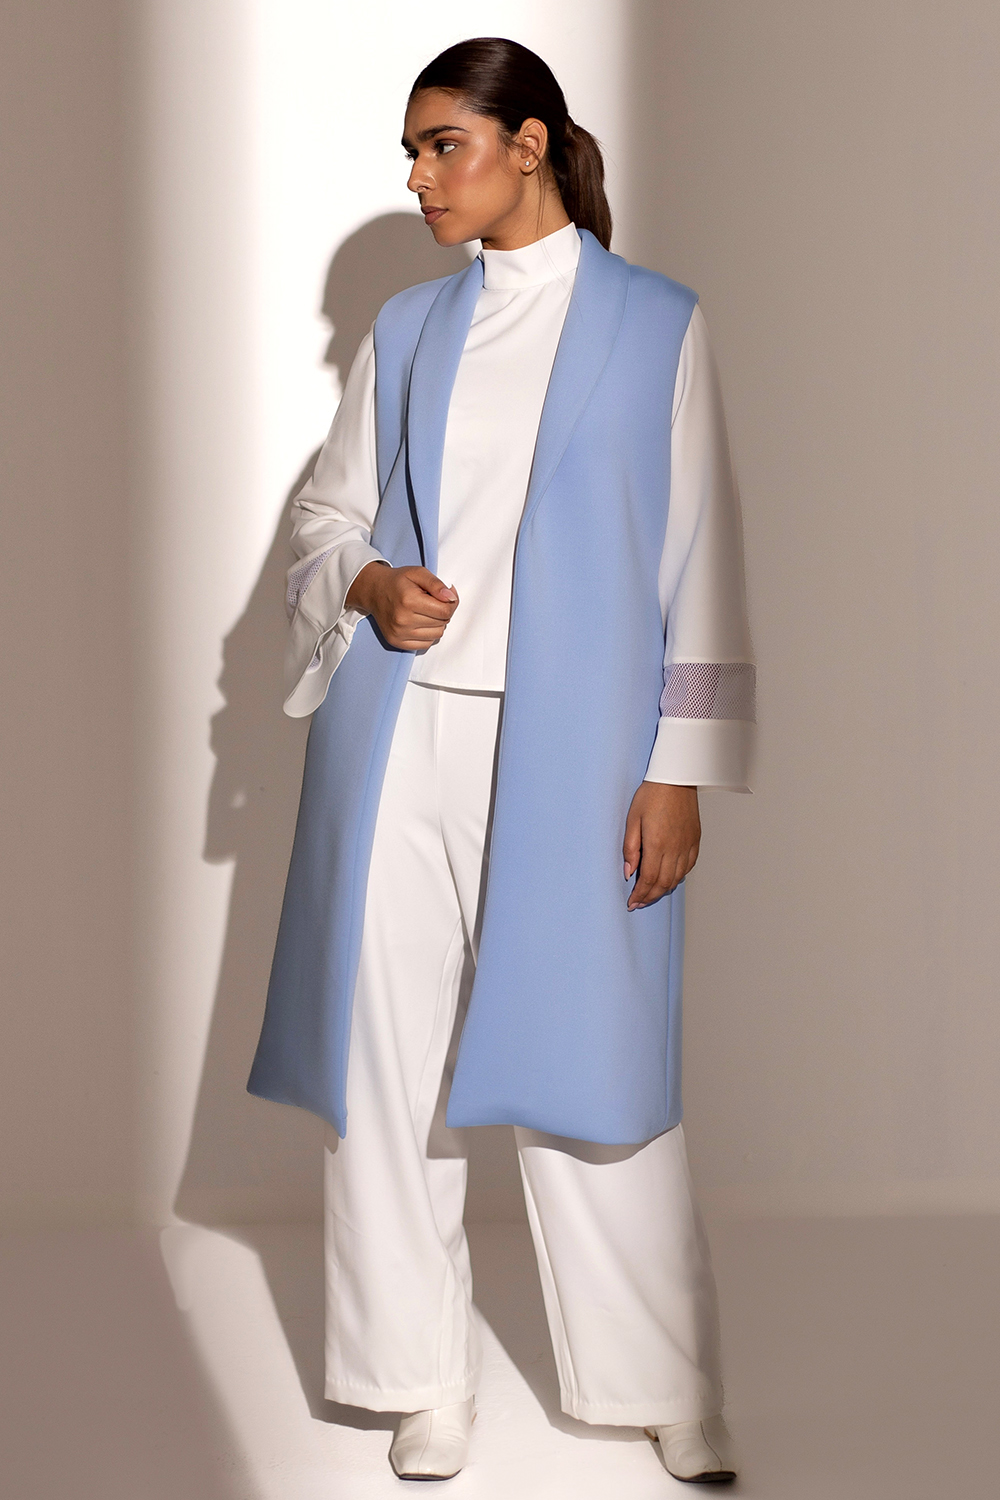 White and Blue coat Set